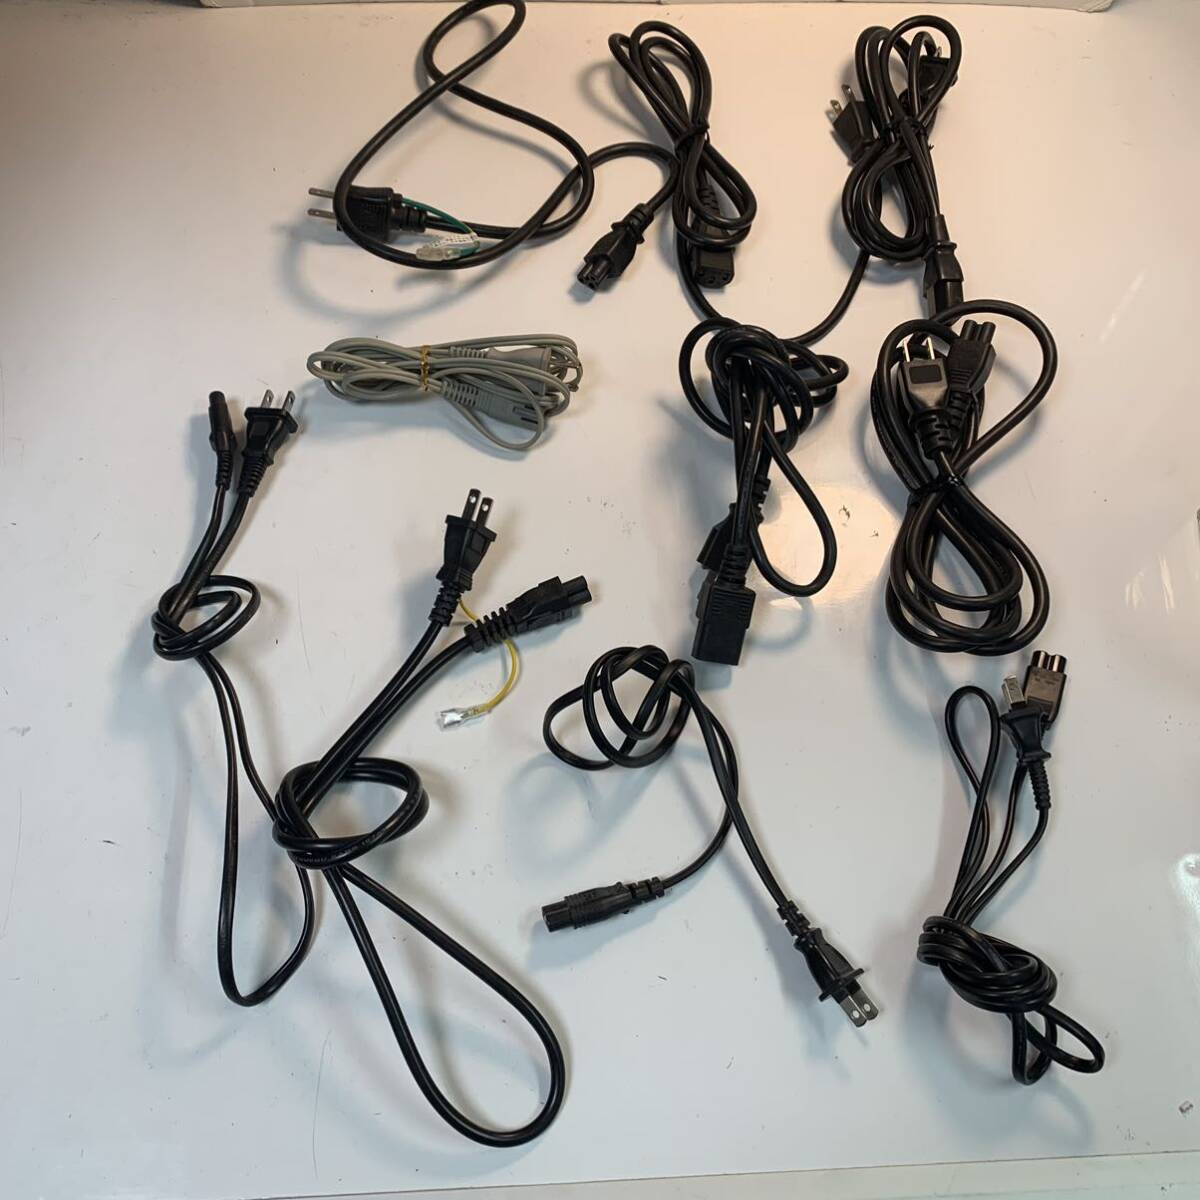 ジャンク品 メガネ端子ケーブル まとめ売りセット 電源ケーブル 電源コードの画像4